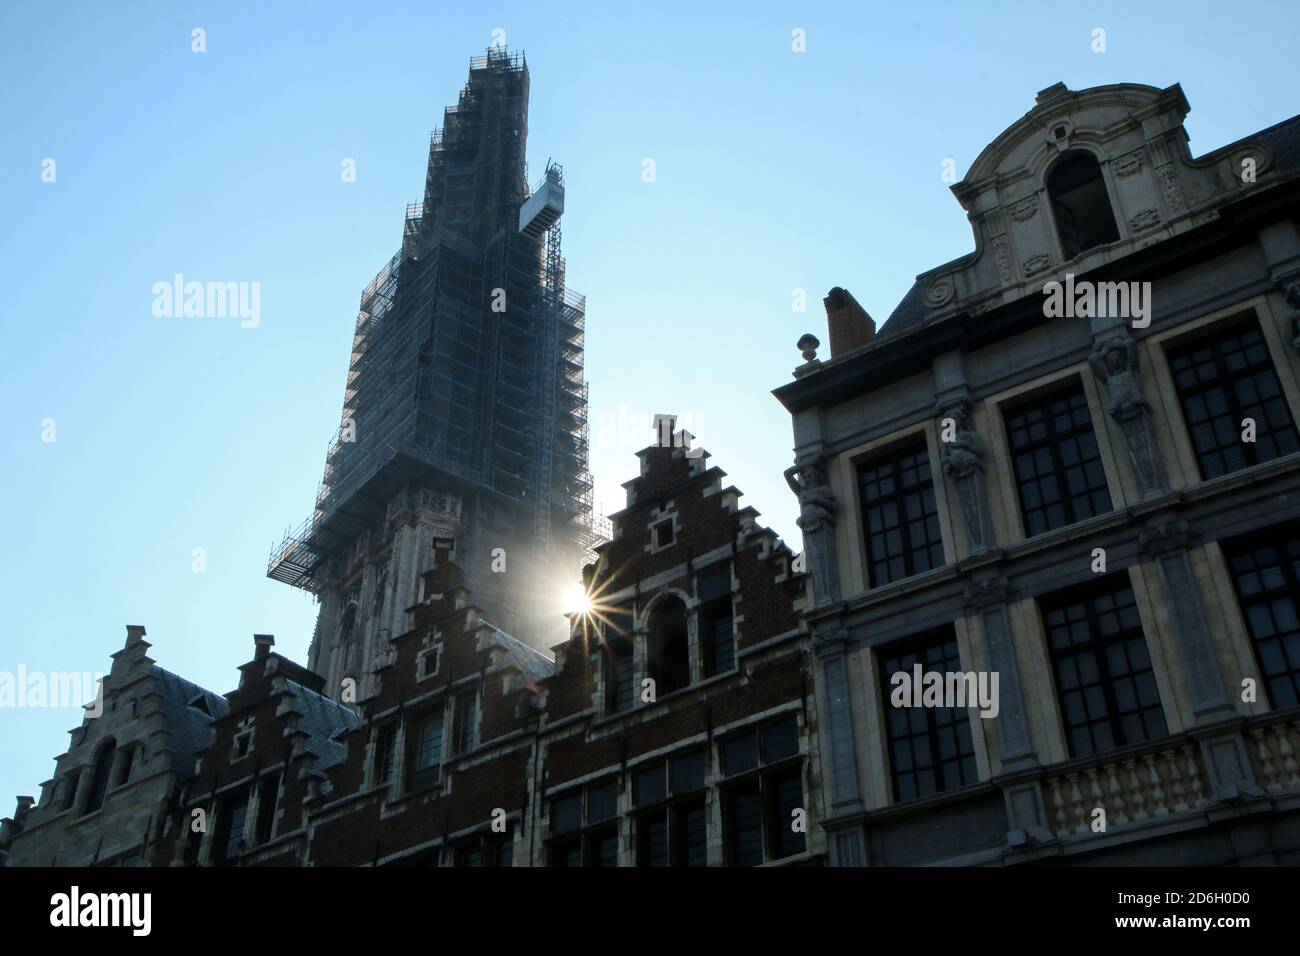 Das Detail der alten historischen Häuser auf dem Platz in der belgischen Stadt Antwerpen mit einem Turm der Kathedrale im Umbau. Stockfoto